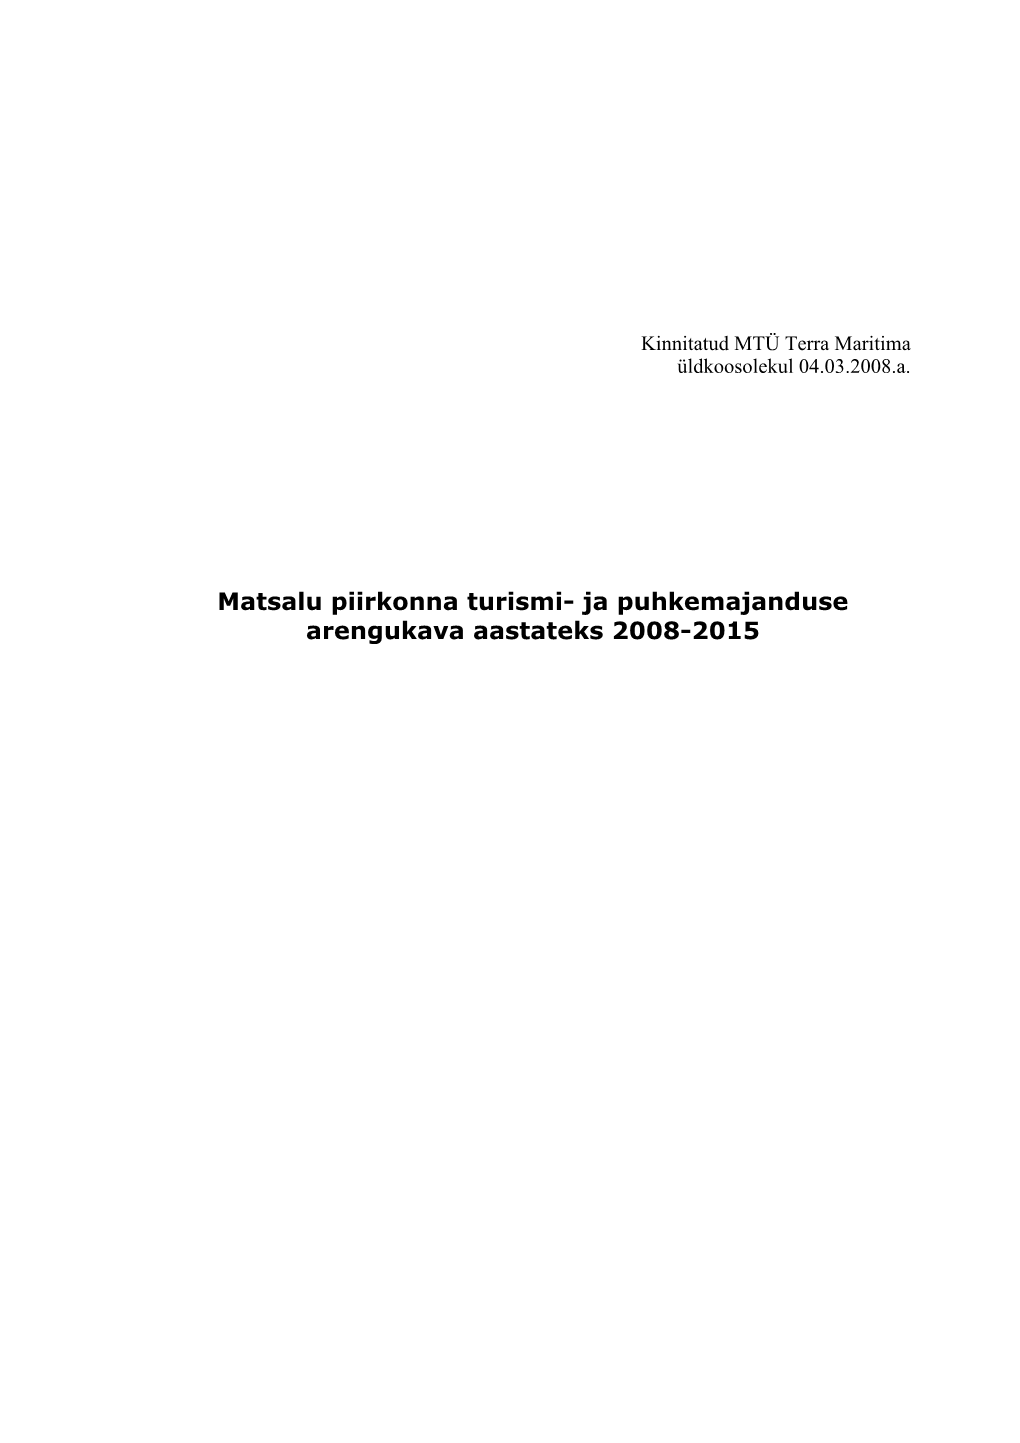 Matsalu Piirkonna Turismi- Ja Puhkemajanduse Arengukava Aastateks 2008-2015